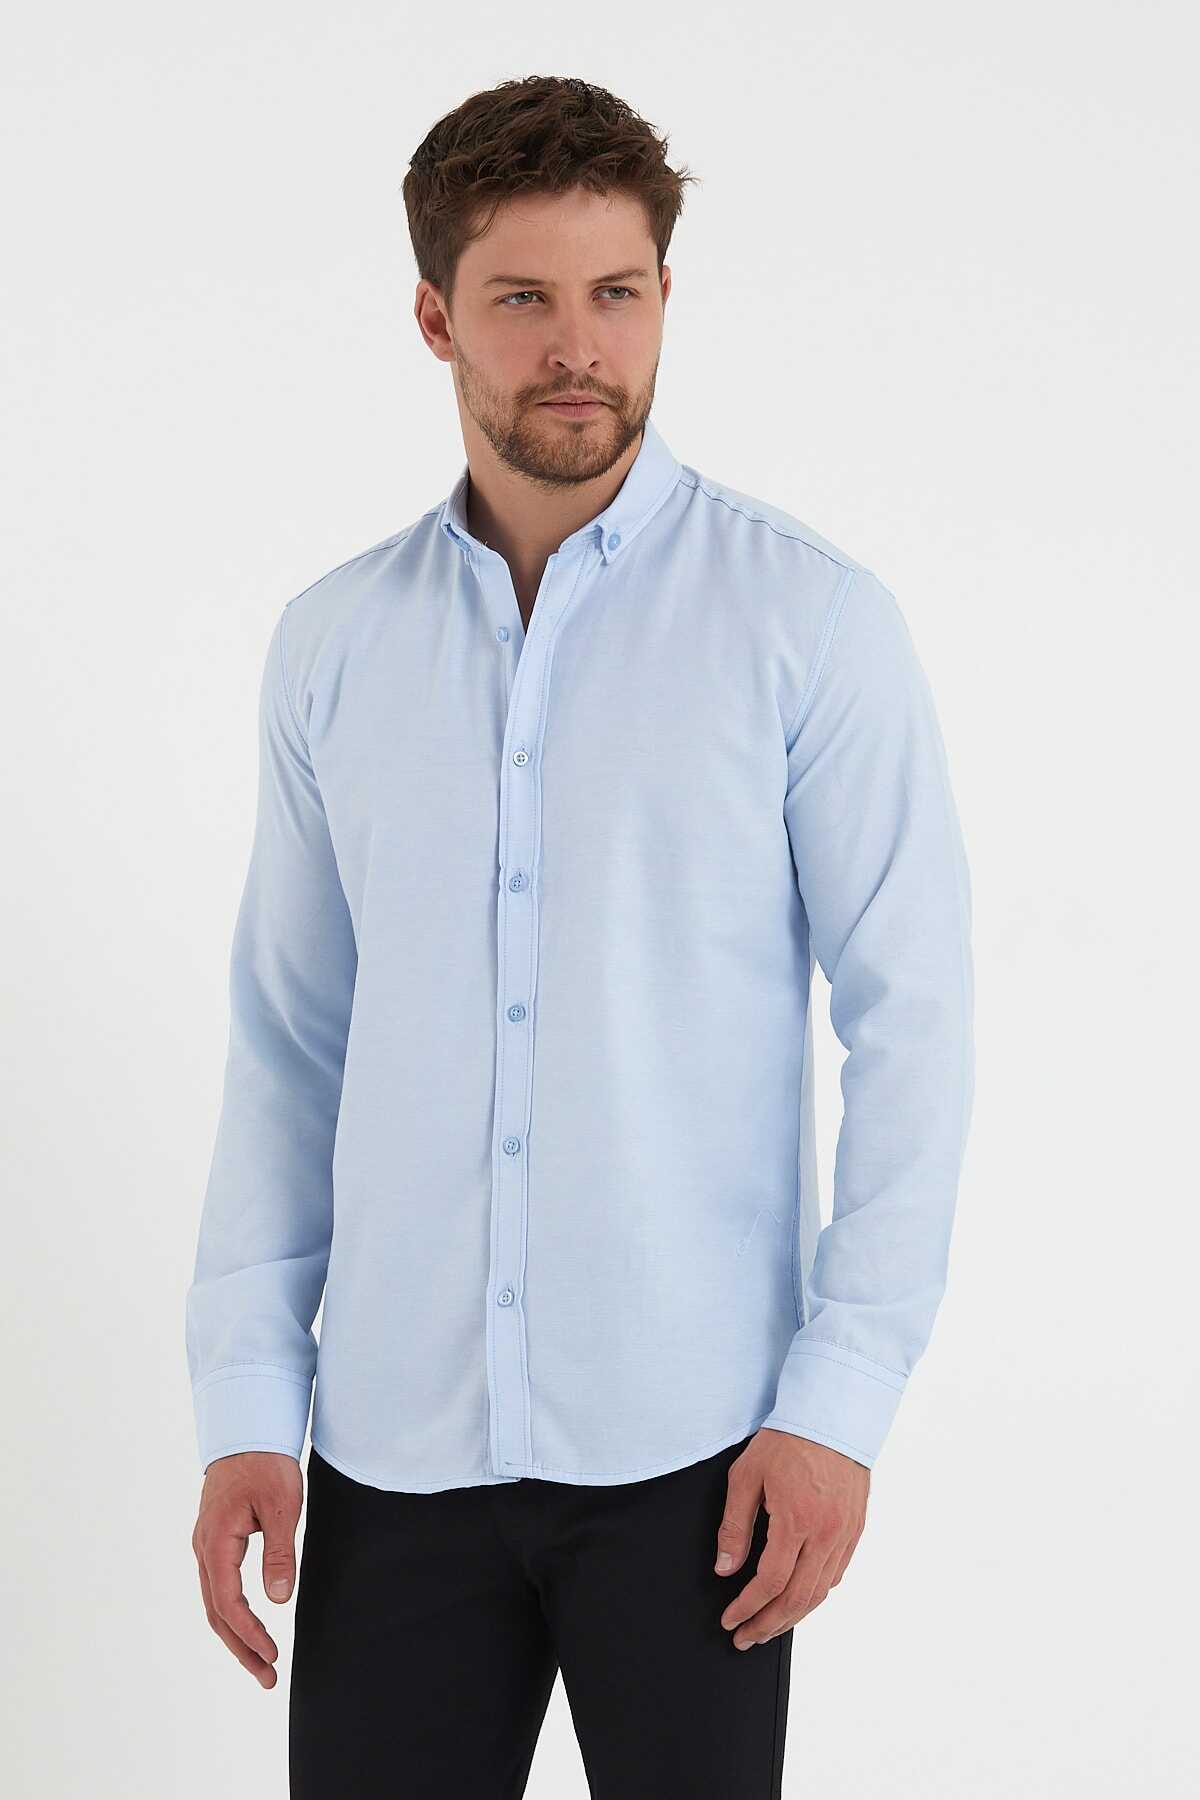 پیراهن کلاسیک مردانه آبی روشن برند CLIPMAN